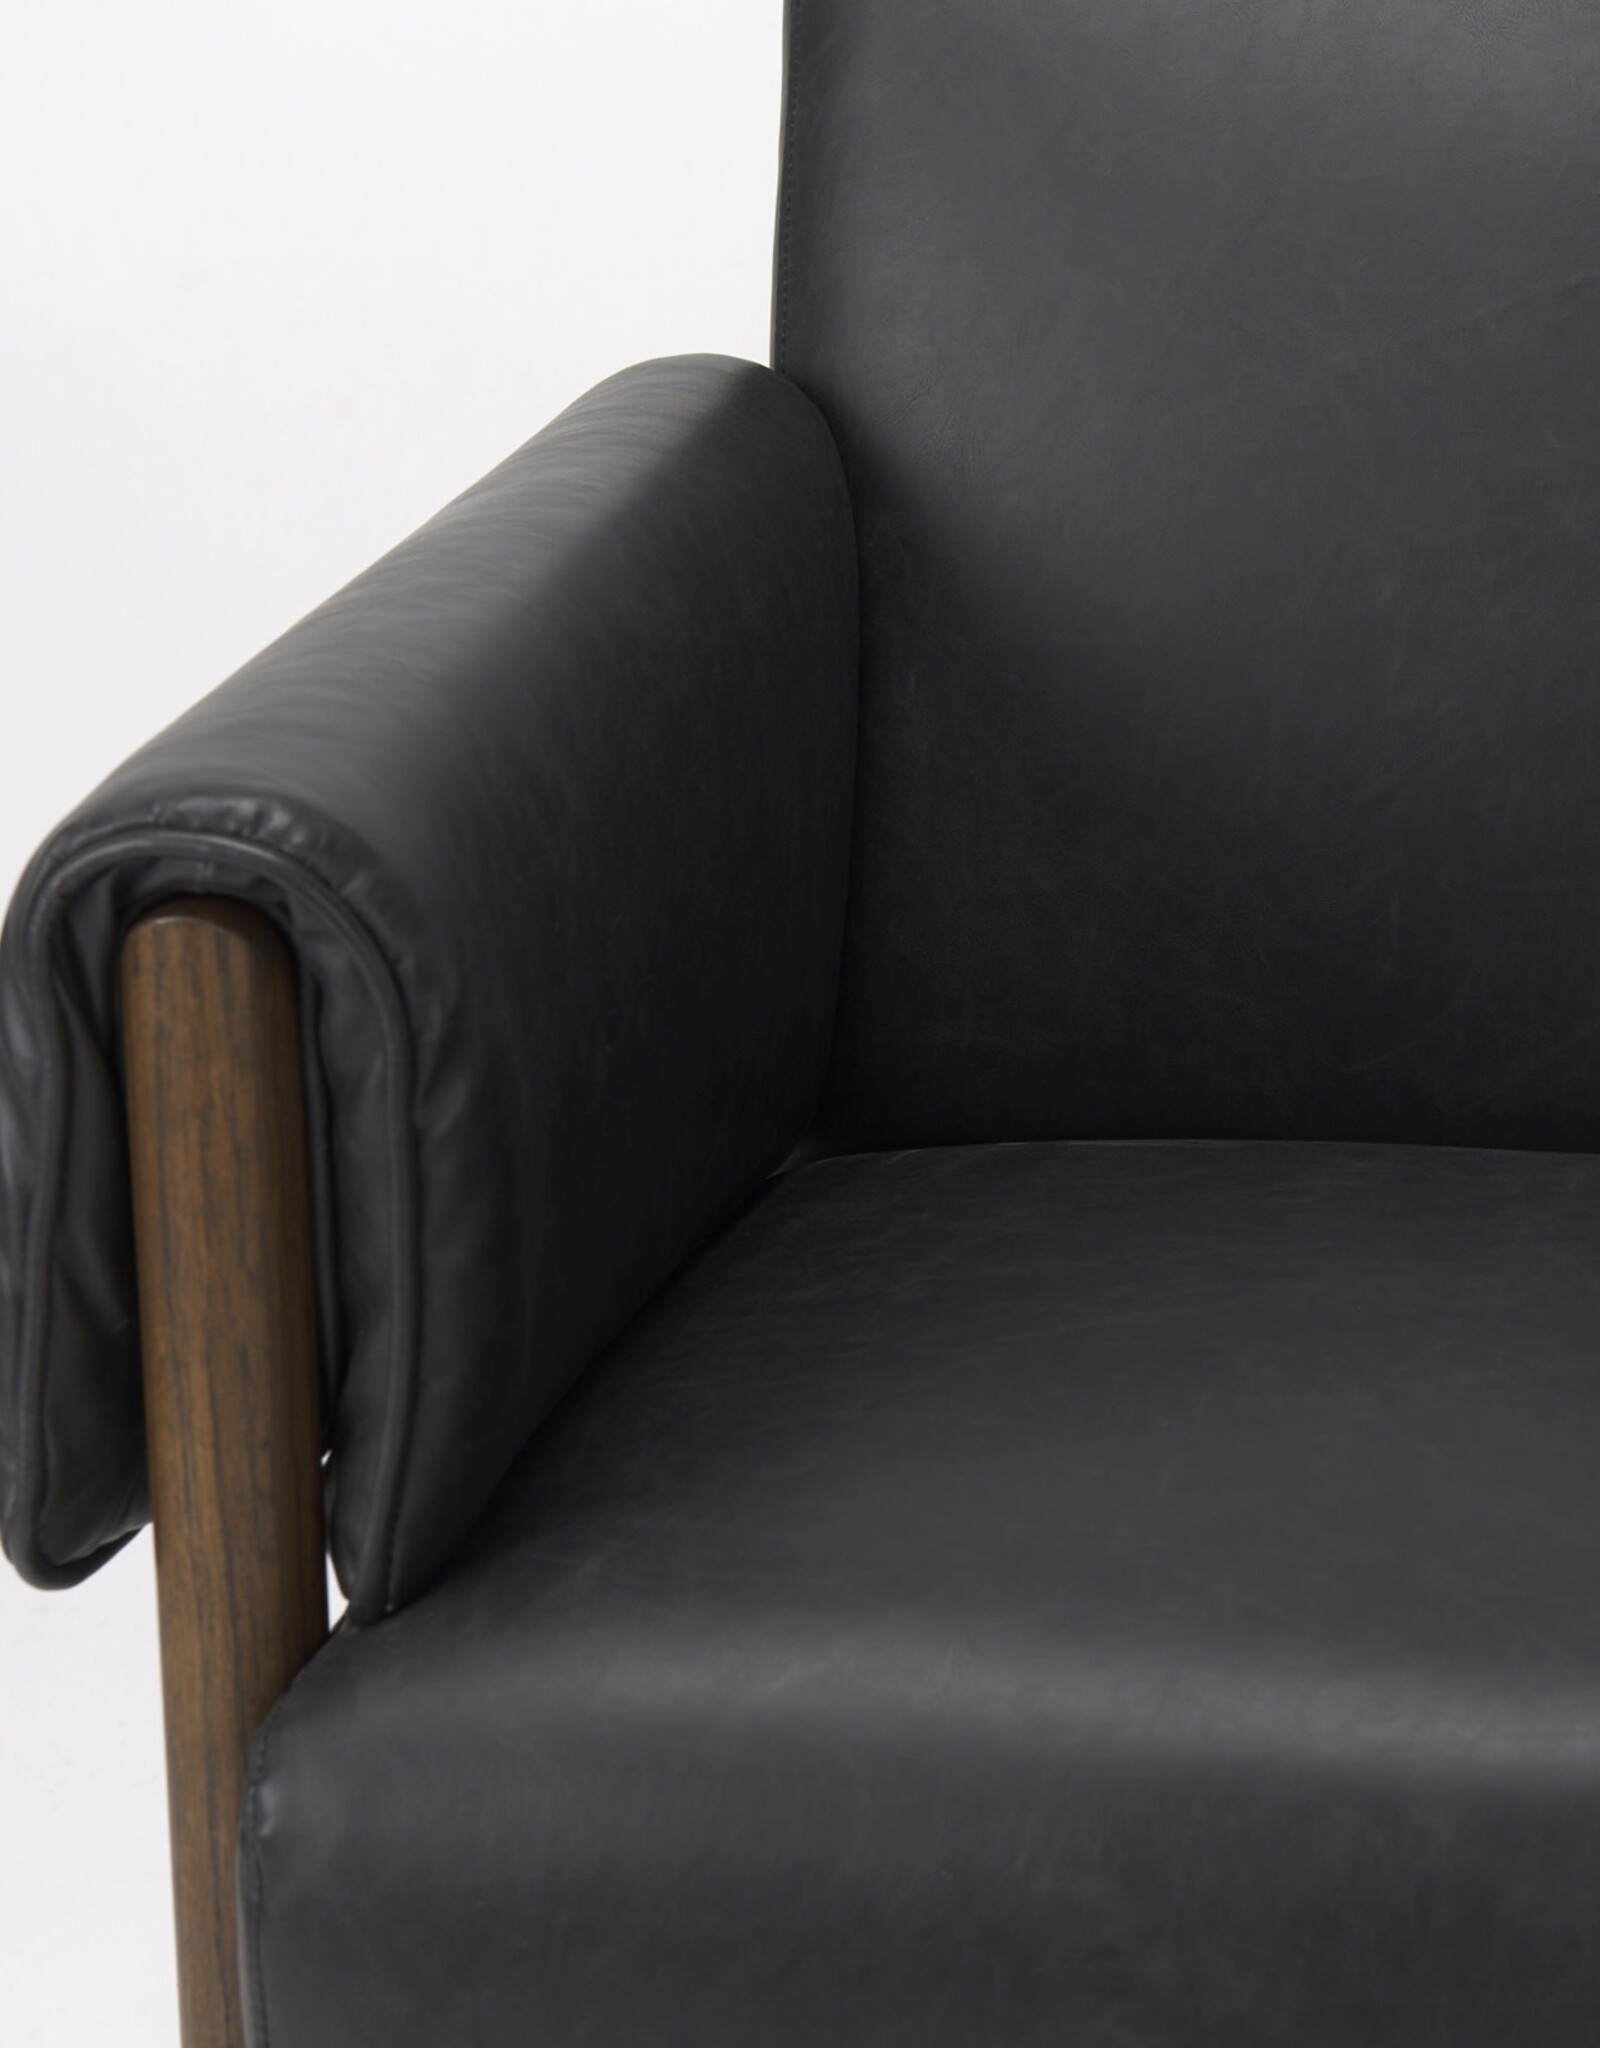 Ashton Black Faux Leather Accent Chair